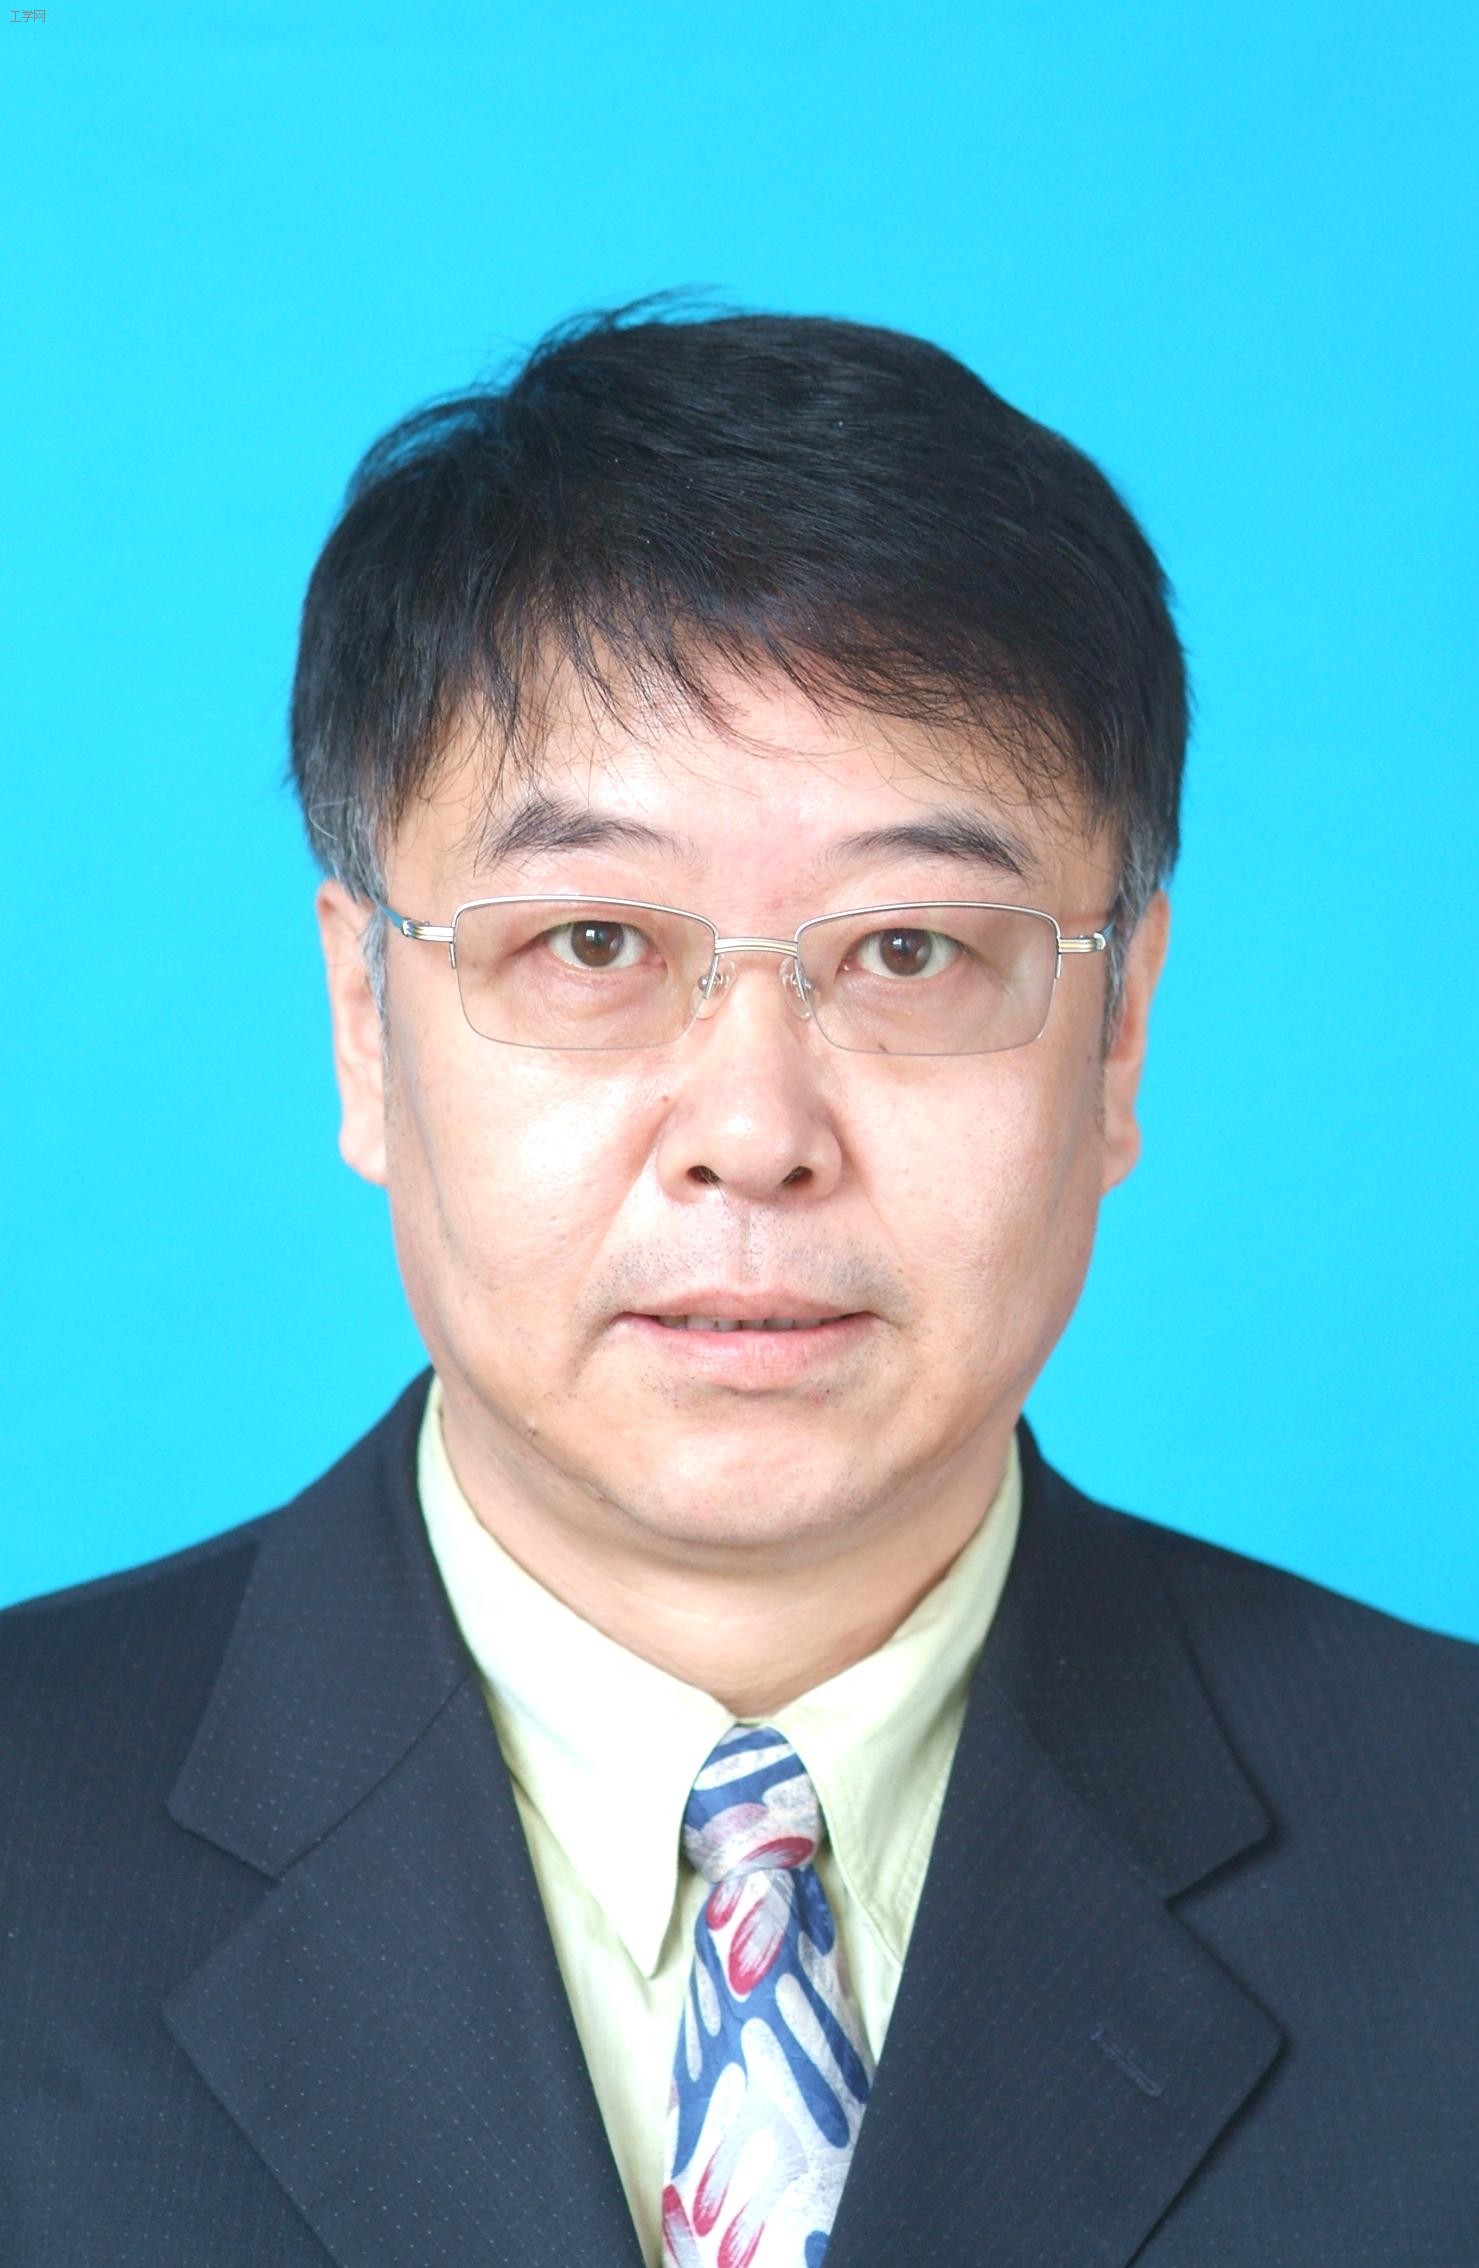 哈尔滨工程大学信息与通信工程学院教授李文兴照片